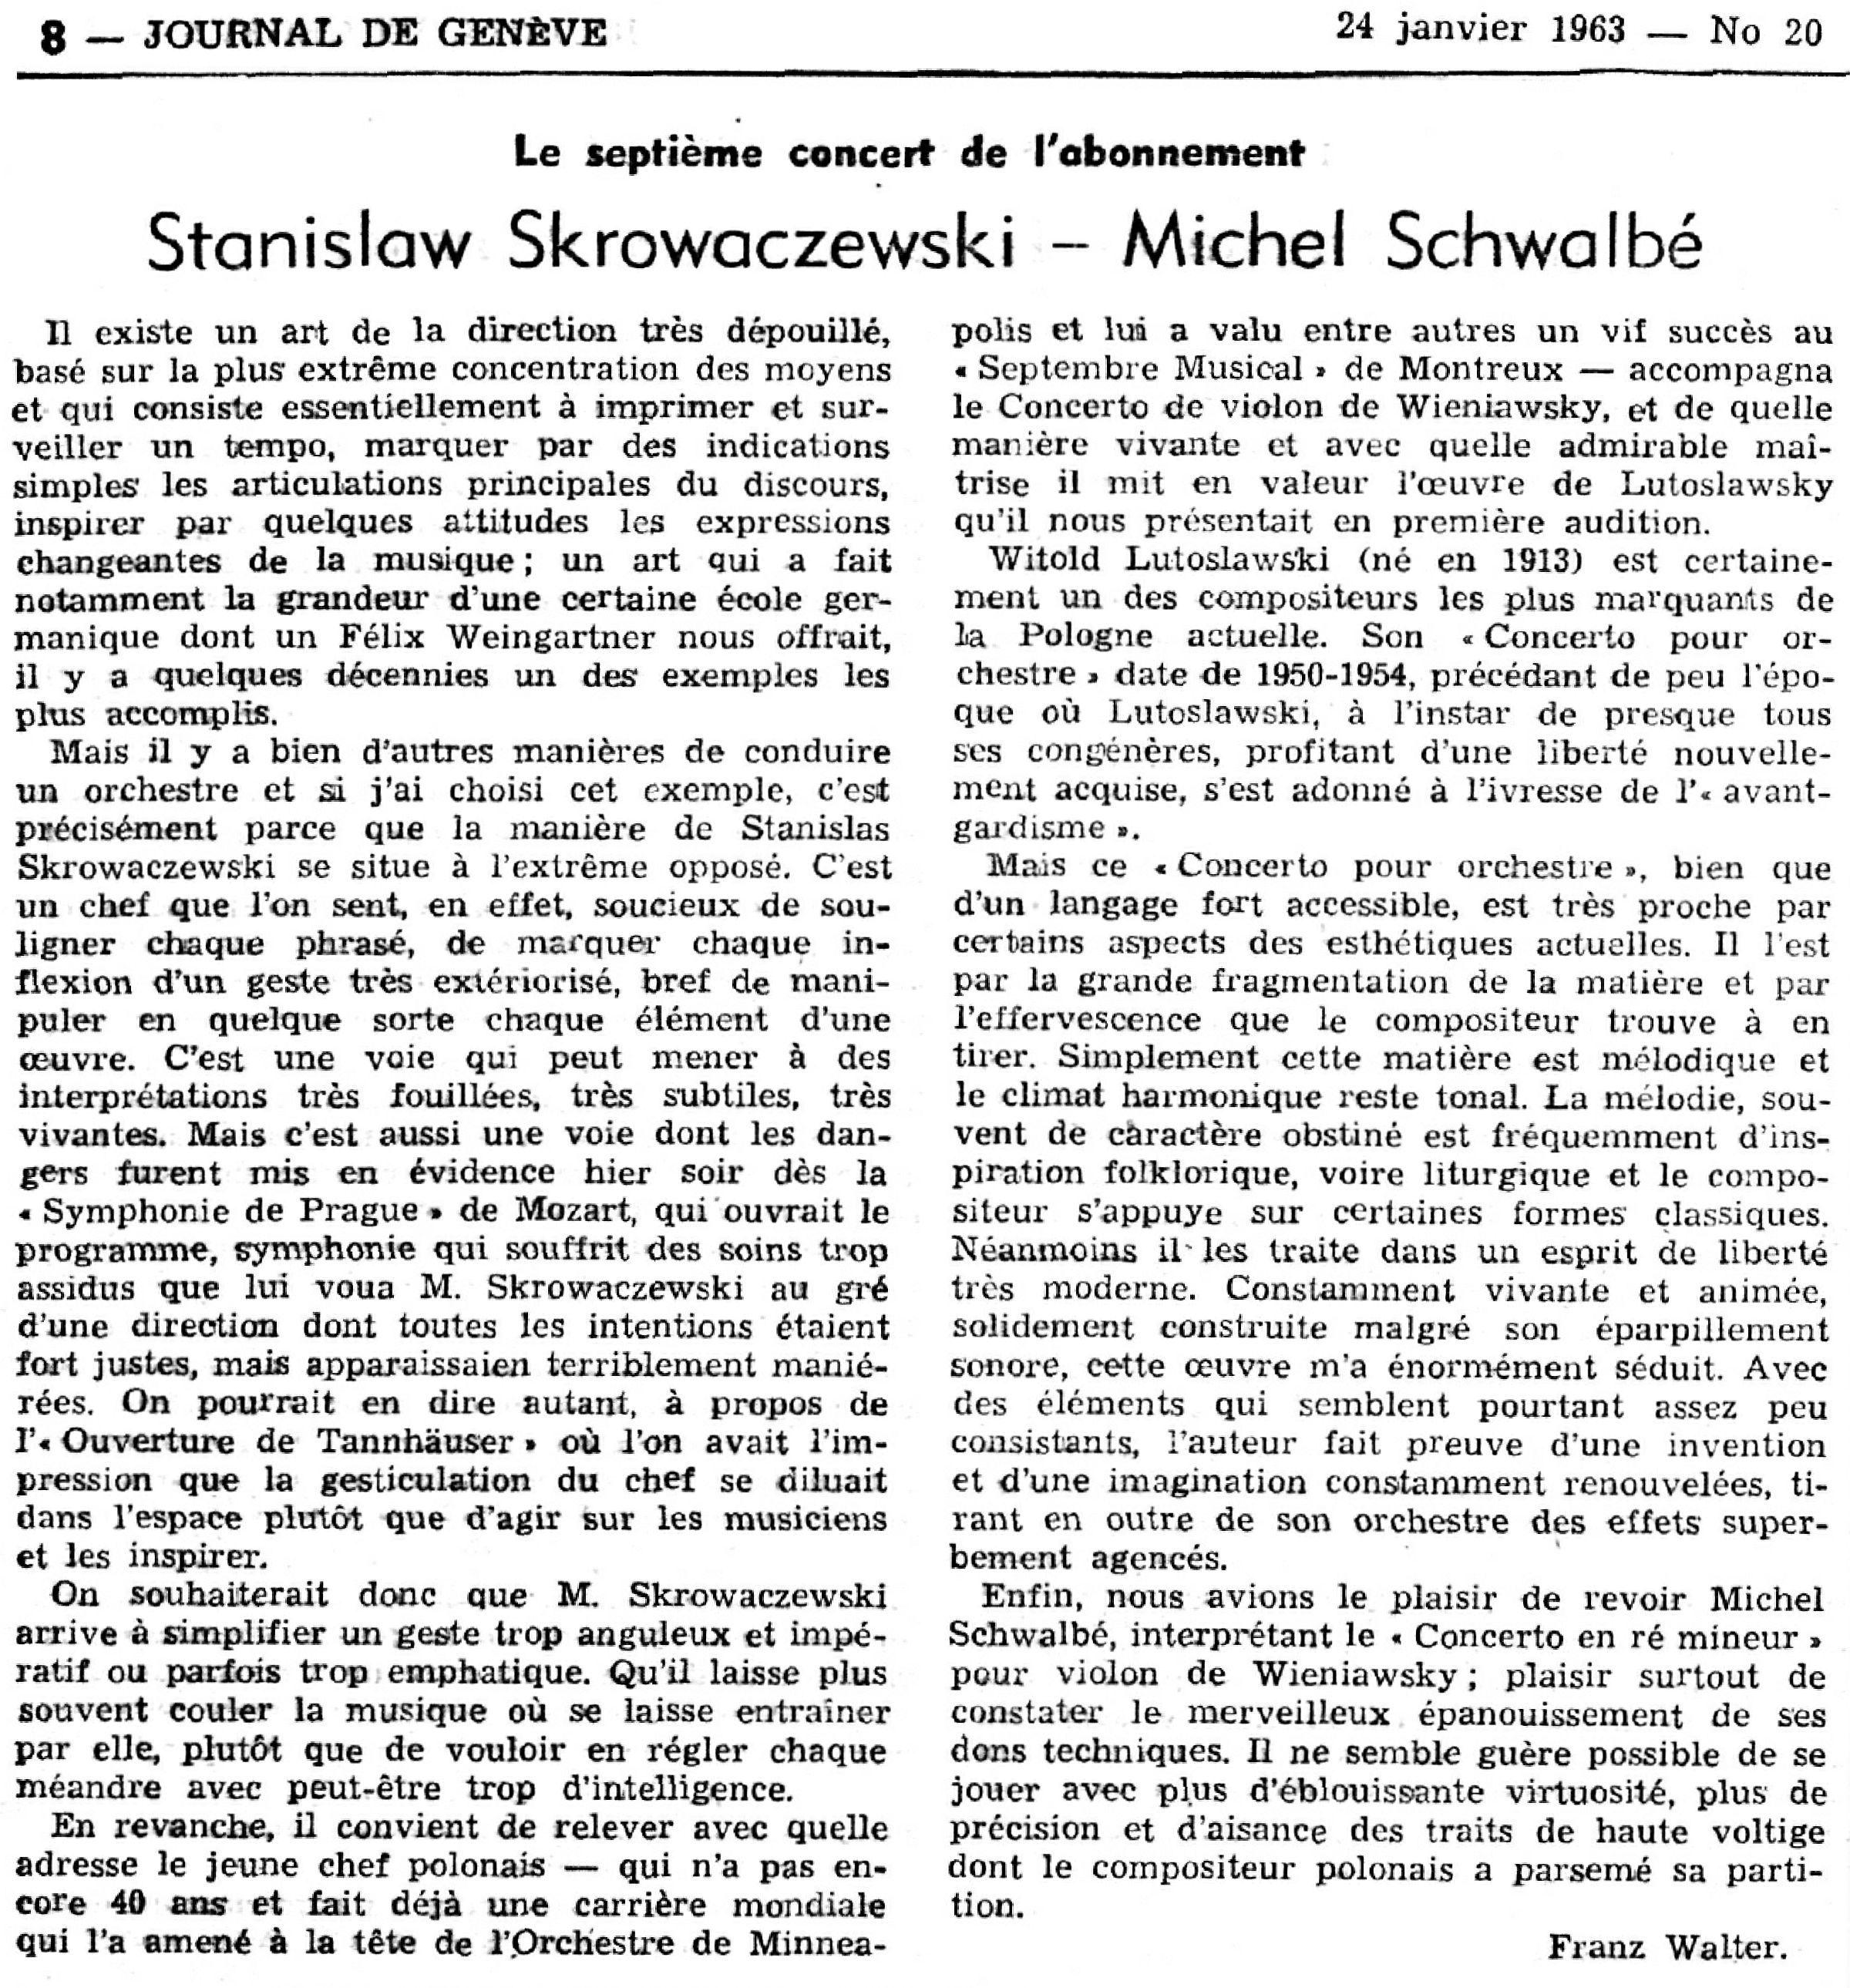 Concert du 23 janvier 1963, Chronique de Franz Walter citée du Journal de Genève, jeudi 24 janvier 1963, page 8